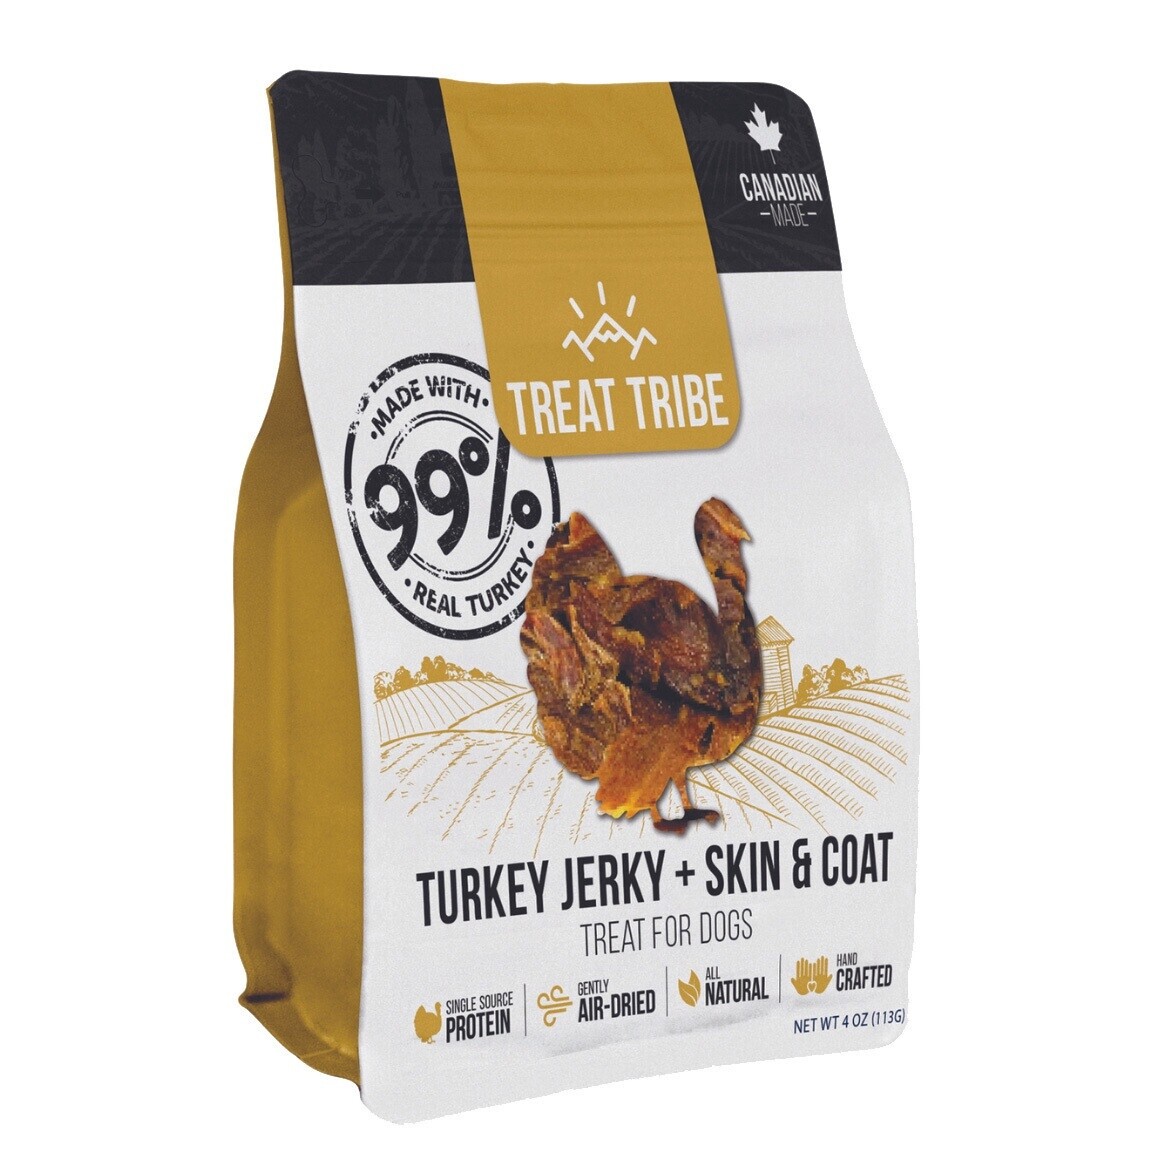 Treat Tribe Turkey Jerky plus skin and coat